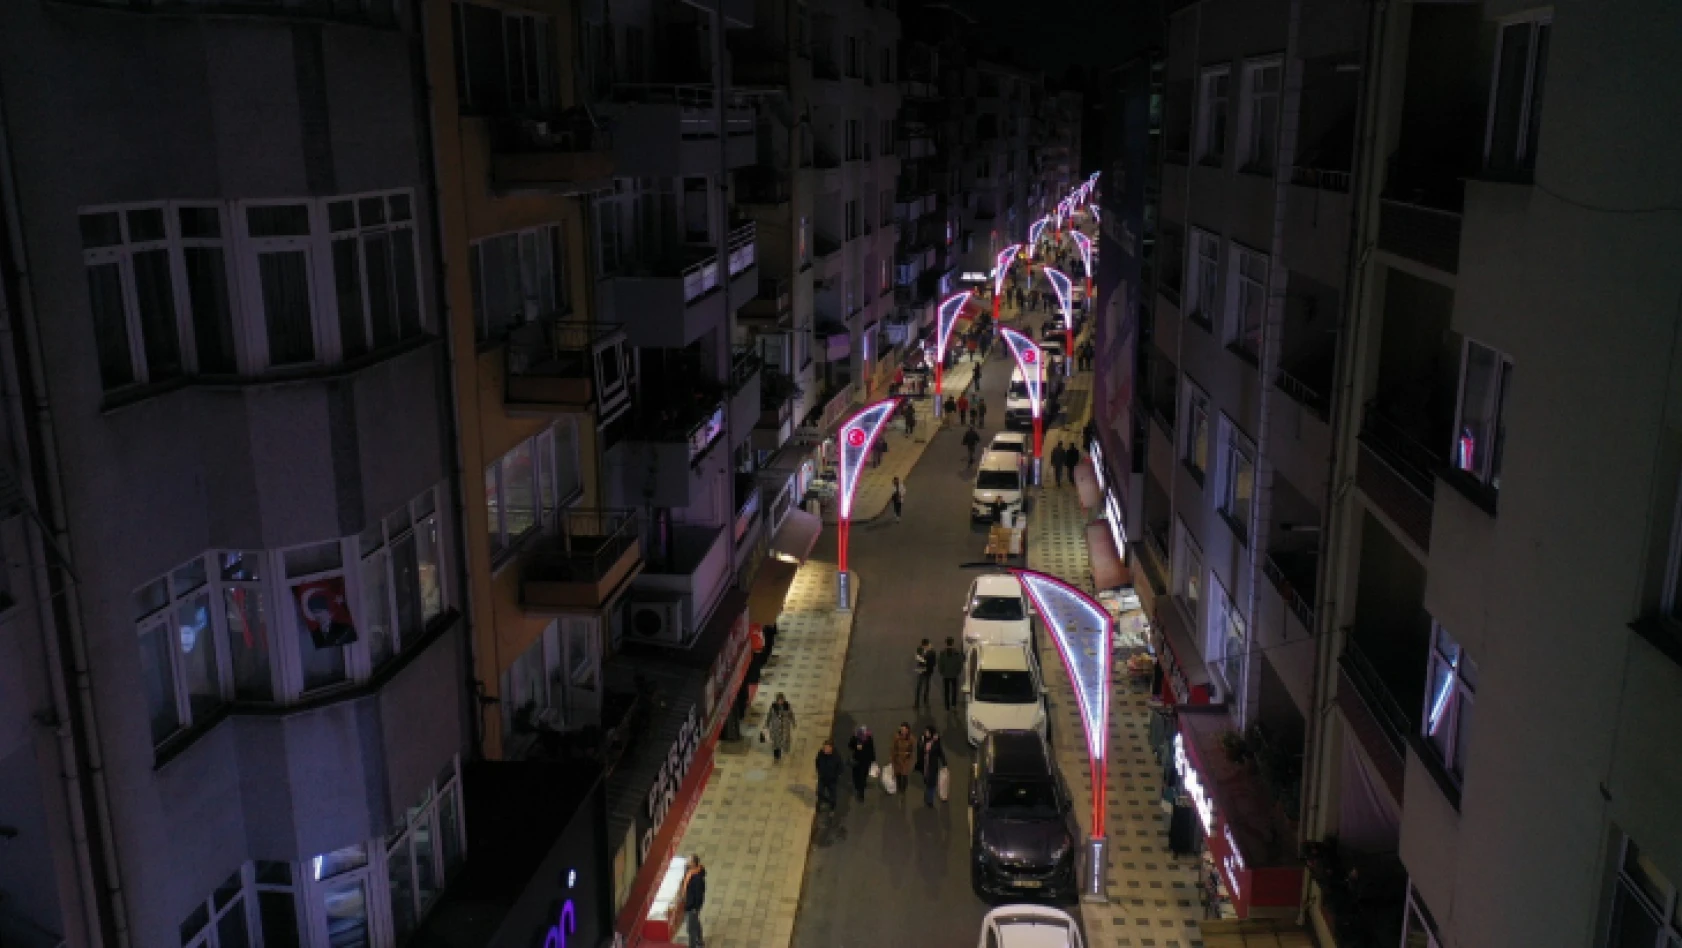 İstiklal Caddesi Atatürk motifli ışıklarla aydınlanıyor